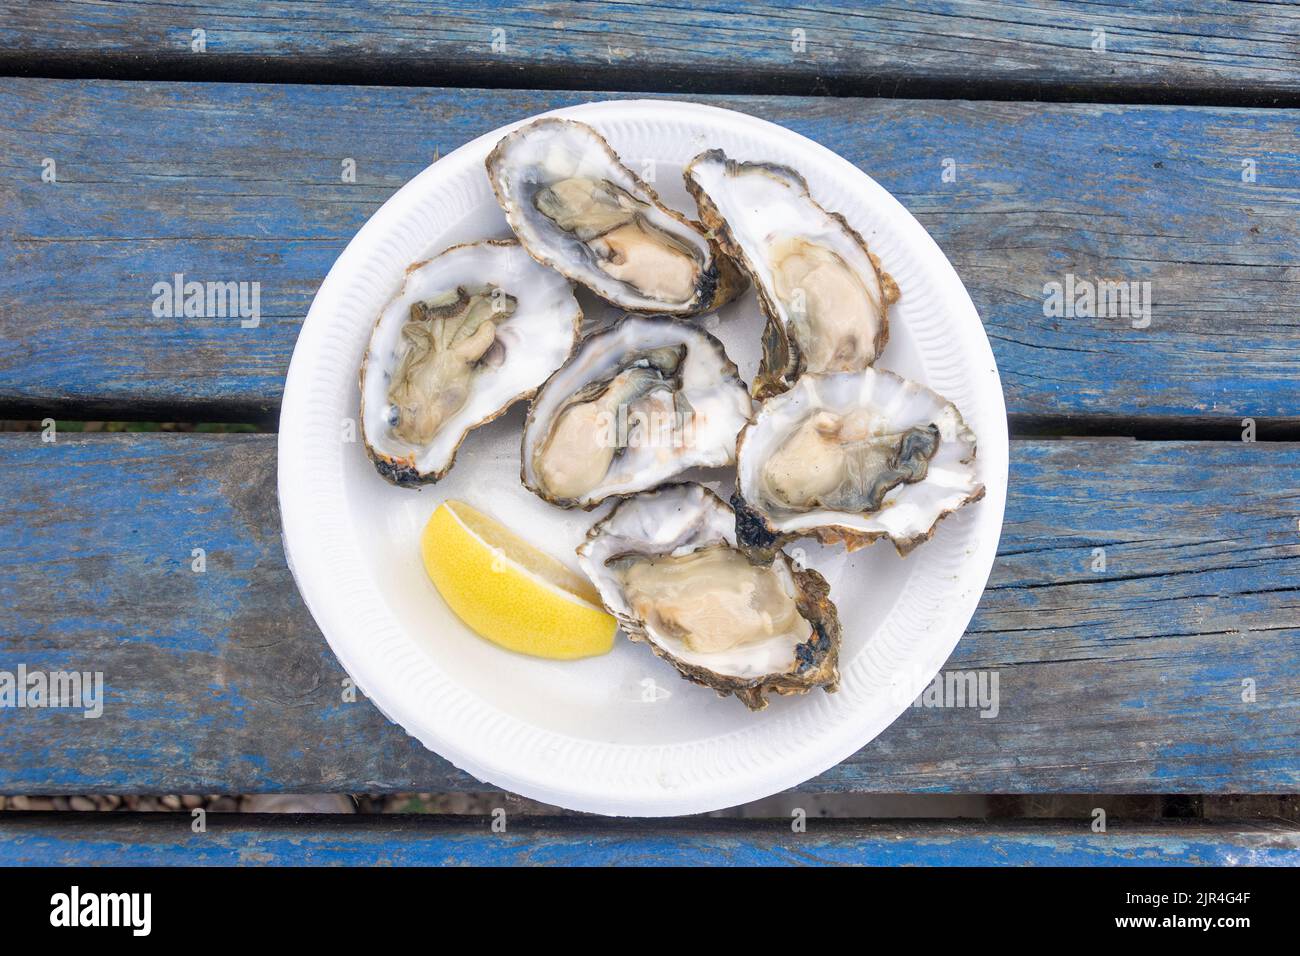 Assiette d'huîtres fraîches dans leurs coquilles, West Mersea Oyster Bar, Coast Road, West Mersea, Essex, Angleterre, Royaume-Uni Banque D'Images